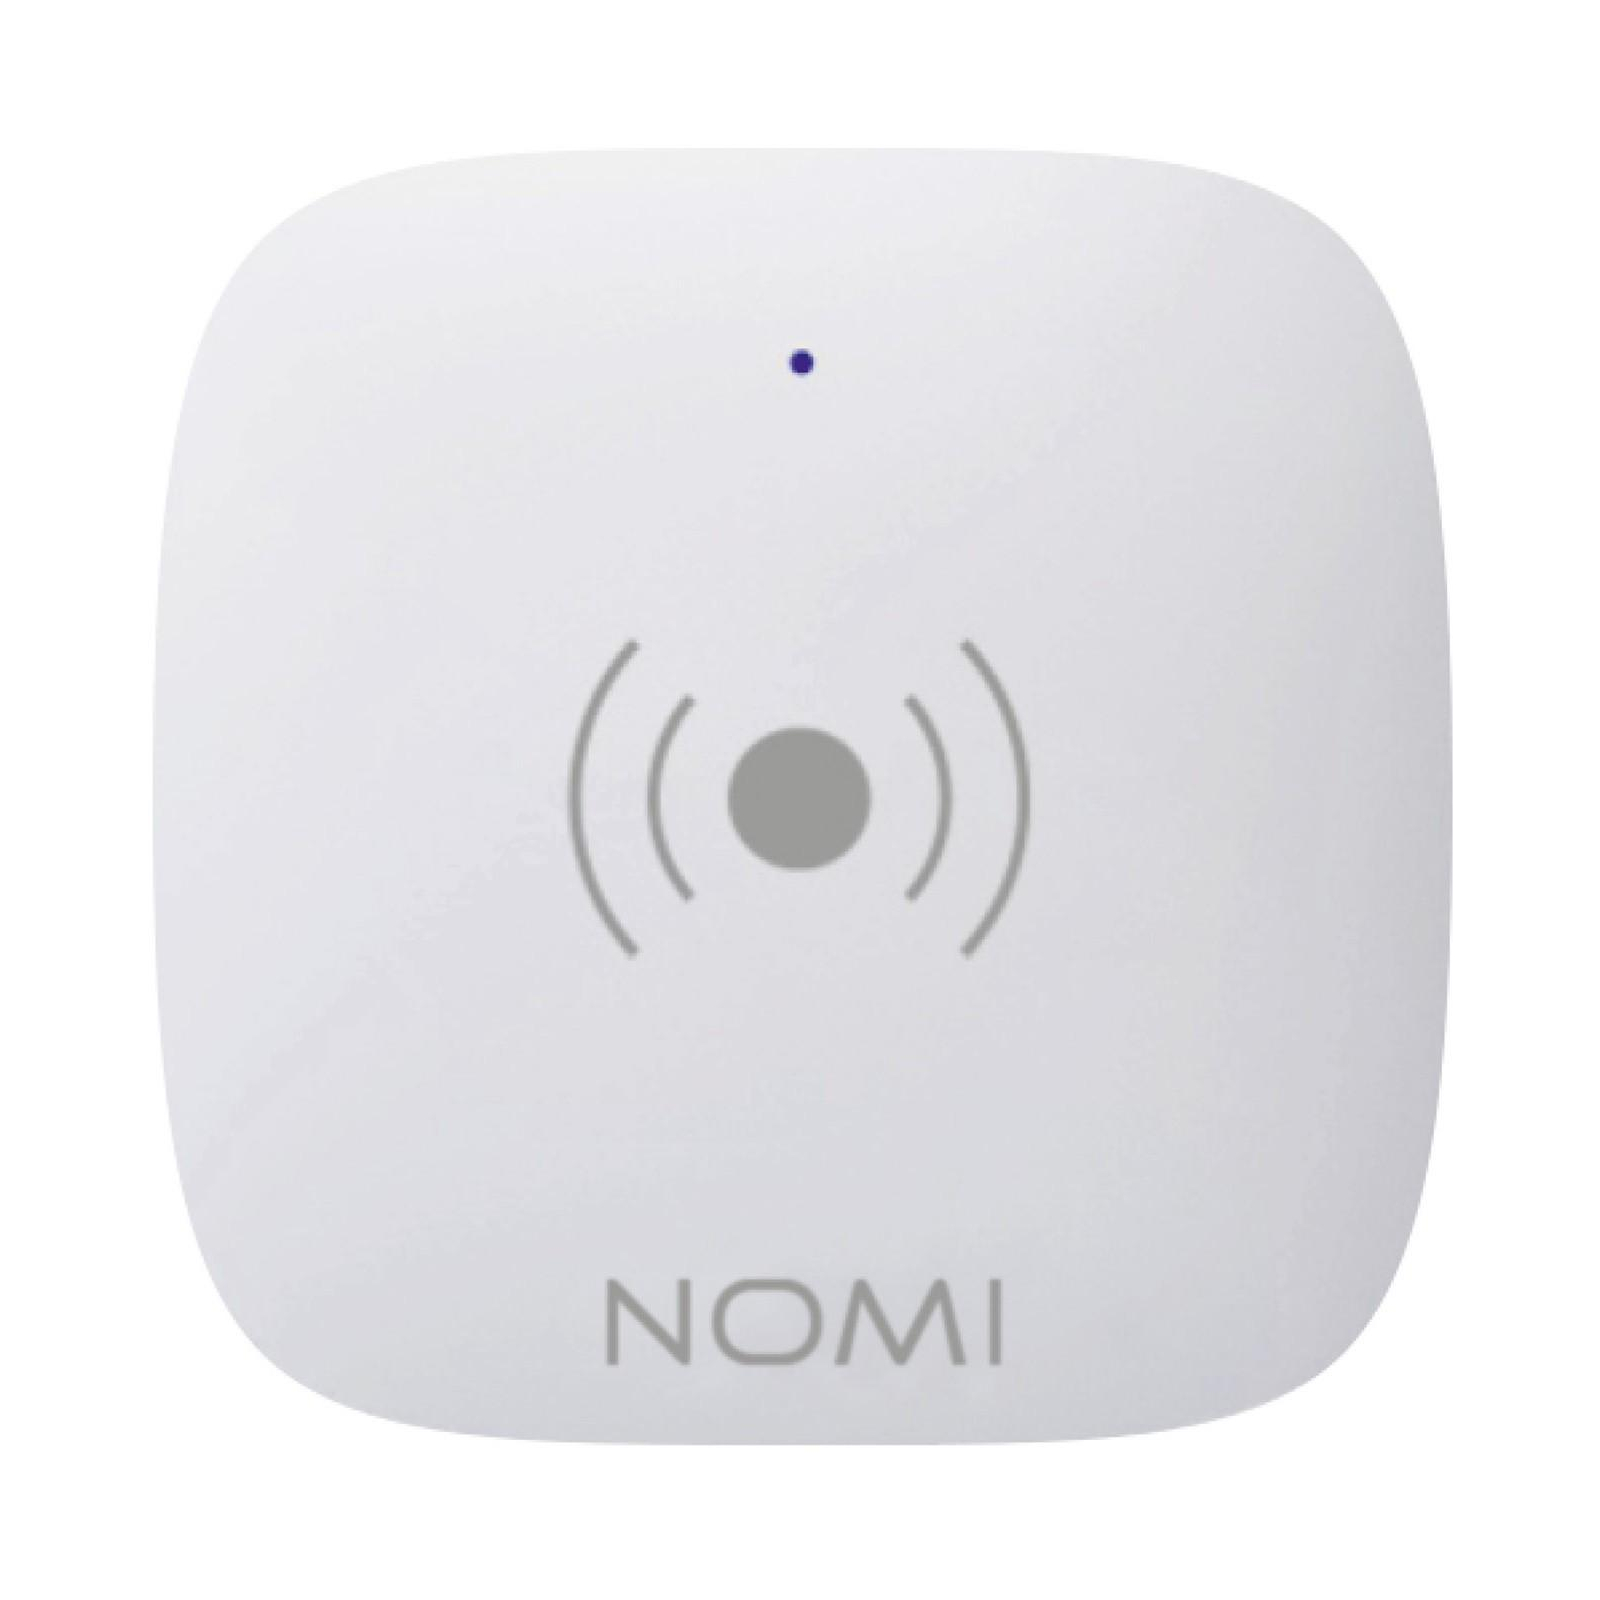 Комплект охранной сигнализации Nomi набор датчиков Smart Home (329732) изображение 4